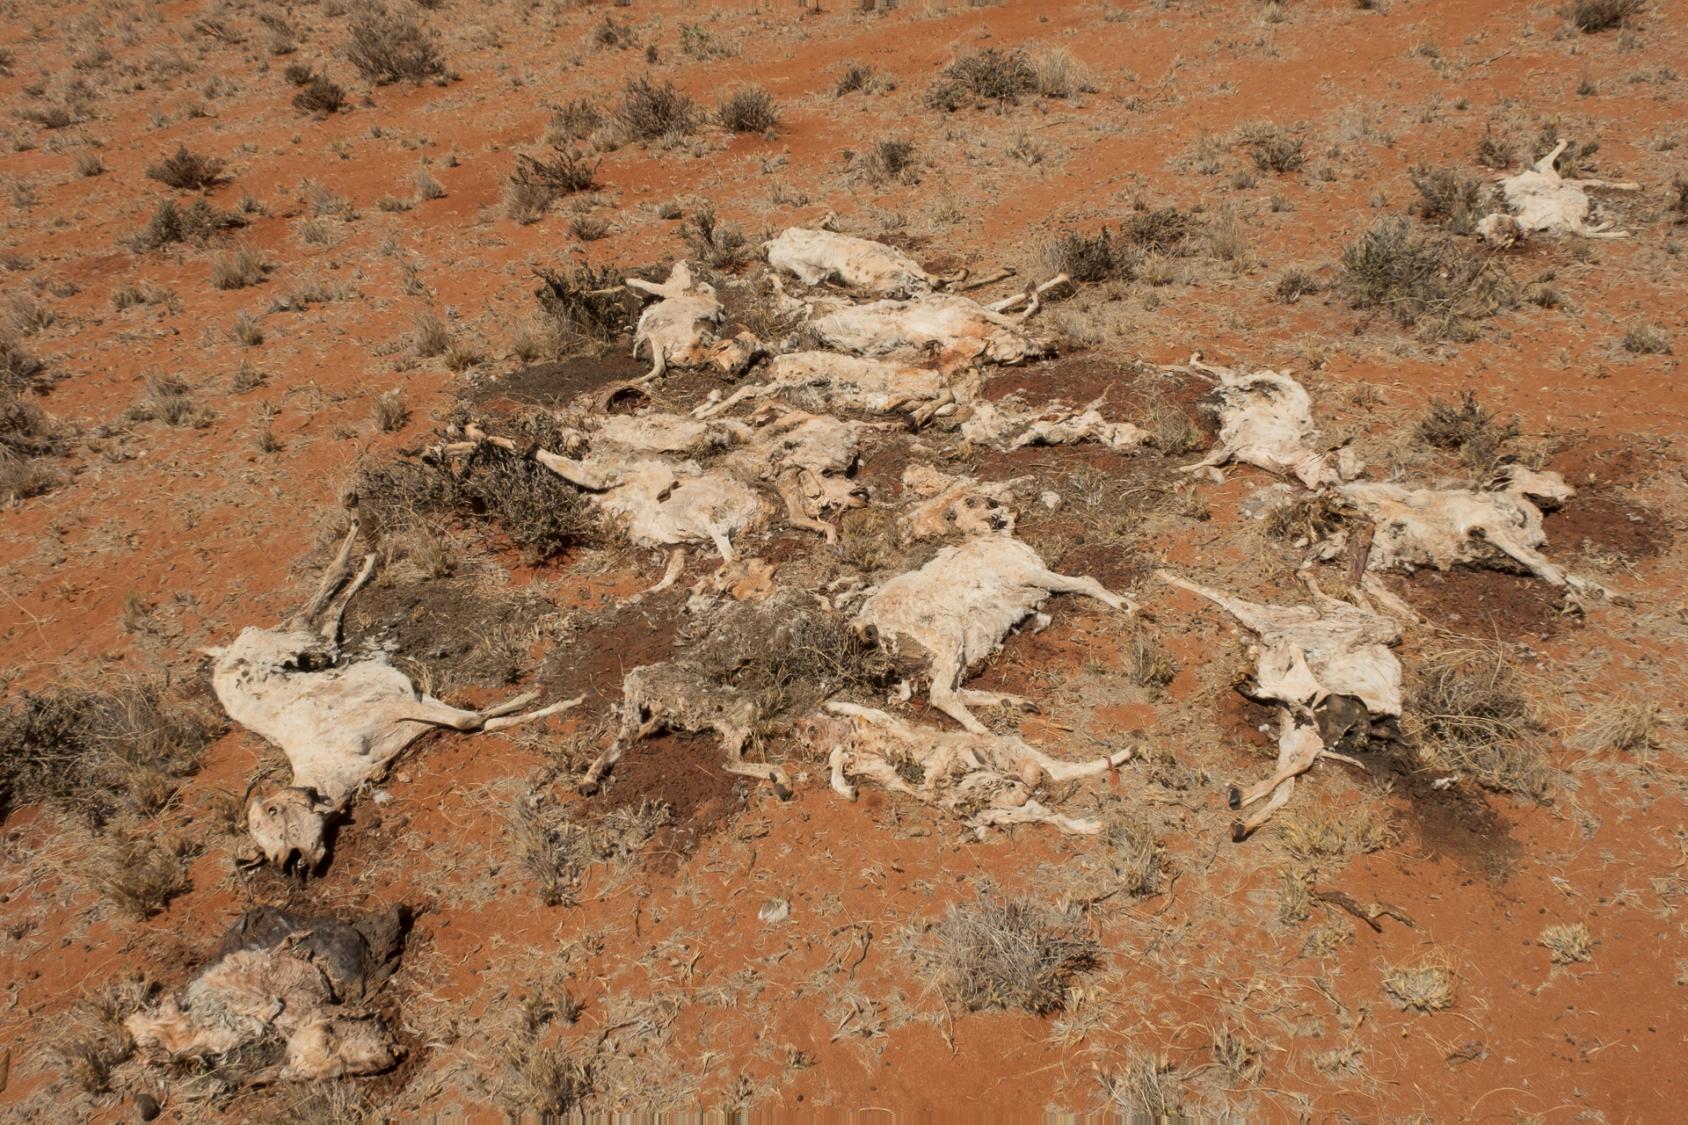 Un troupeau de chameaux morts de faim a été photographié dans une zone rurale de Galmudug, en Somalie, en février 2022.